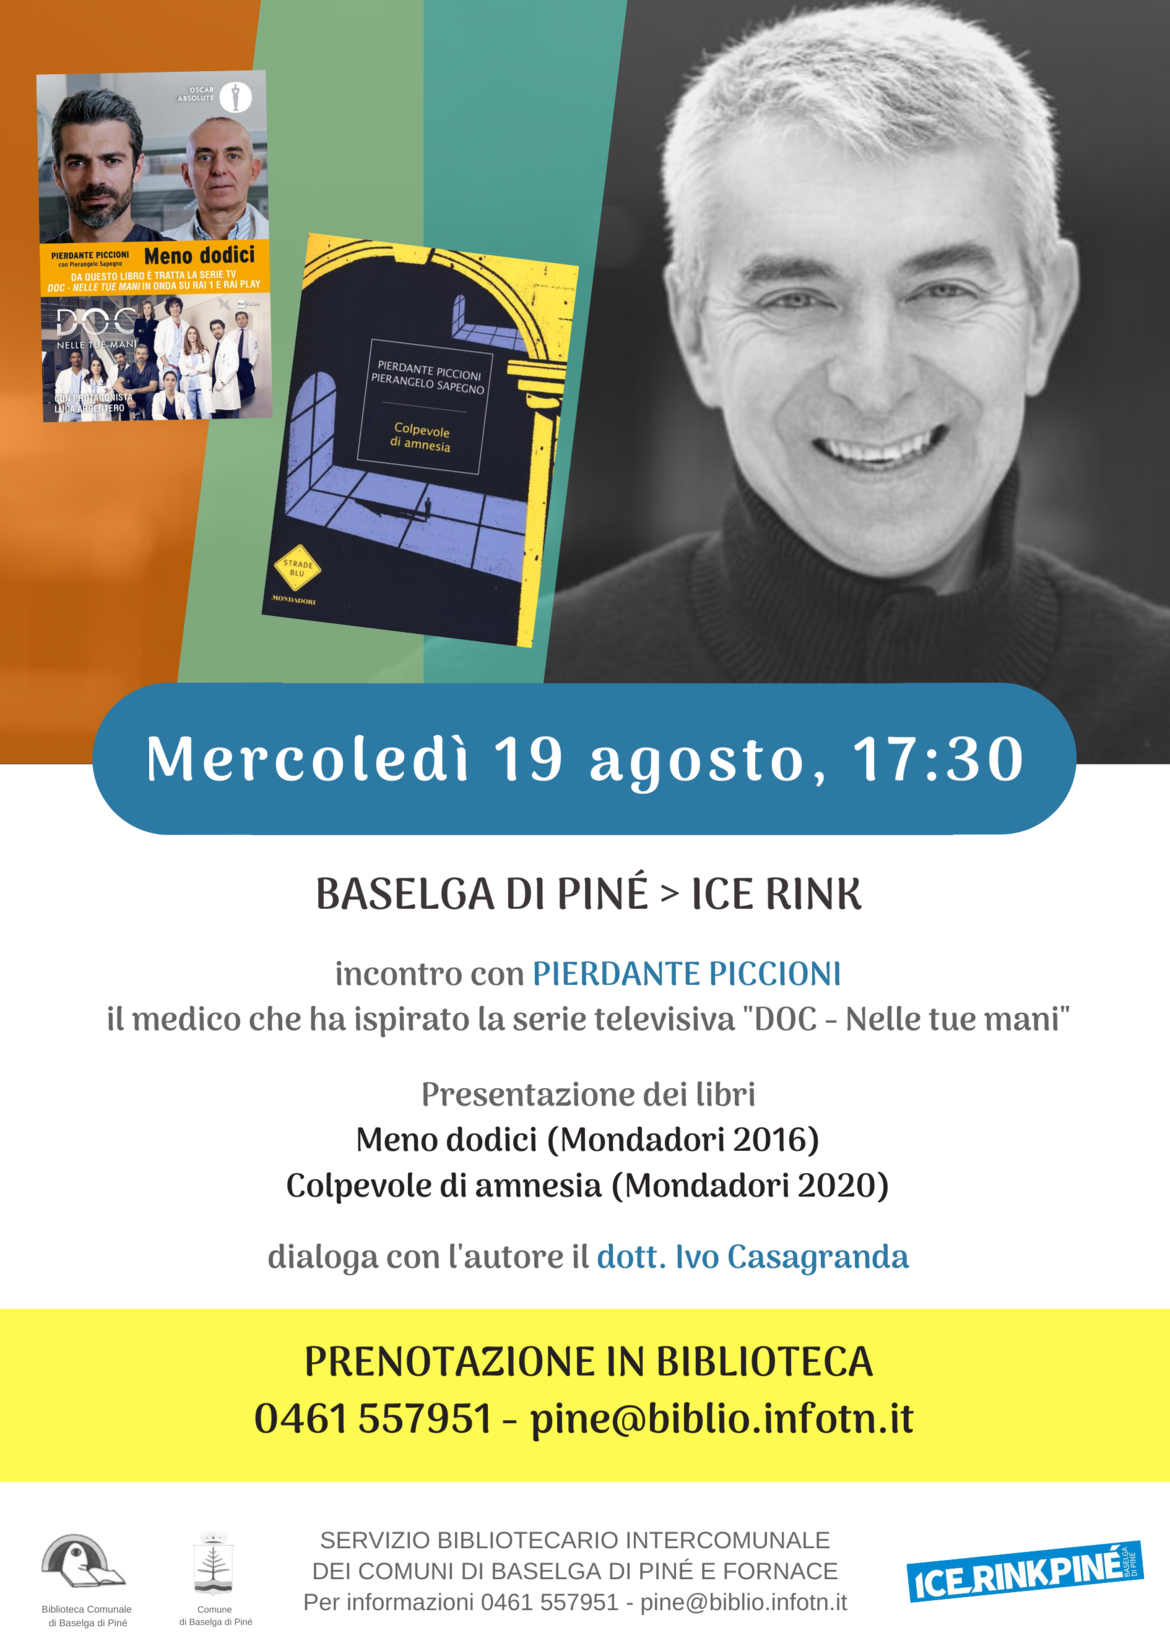 Incontro con l'autore Pierdante Piccioni - Trentino Cultura